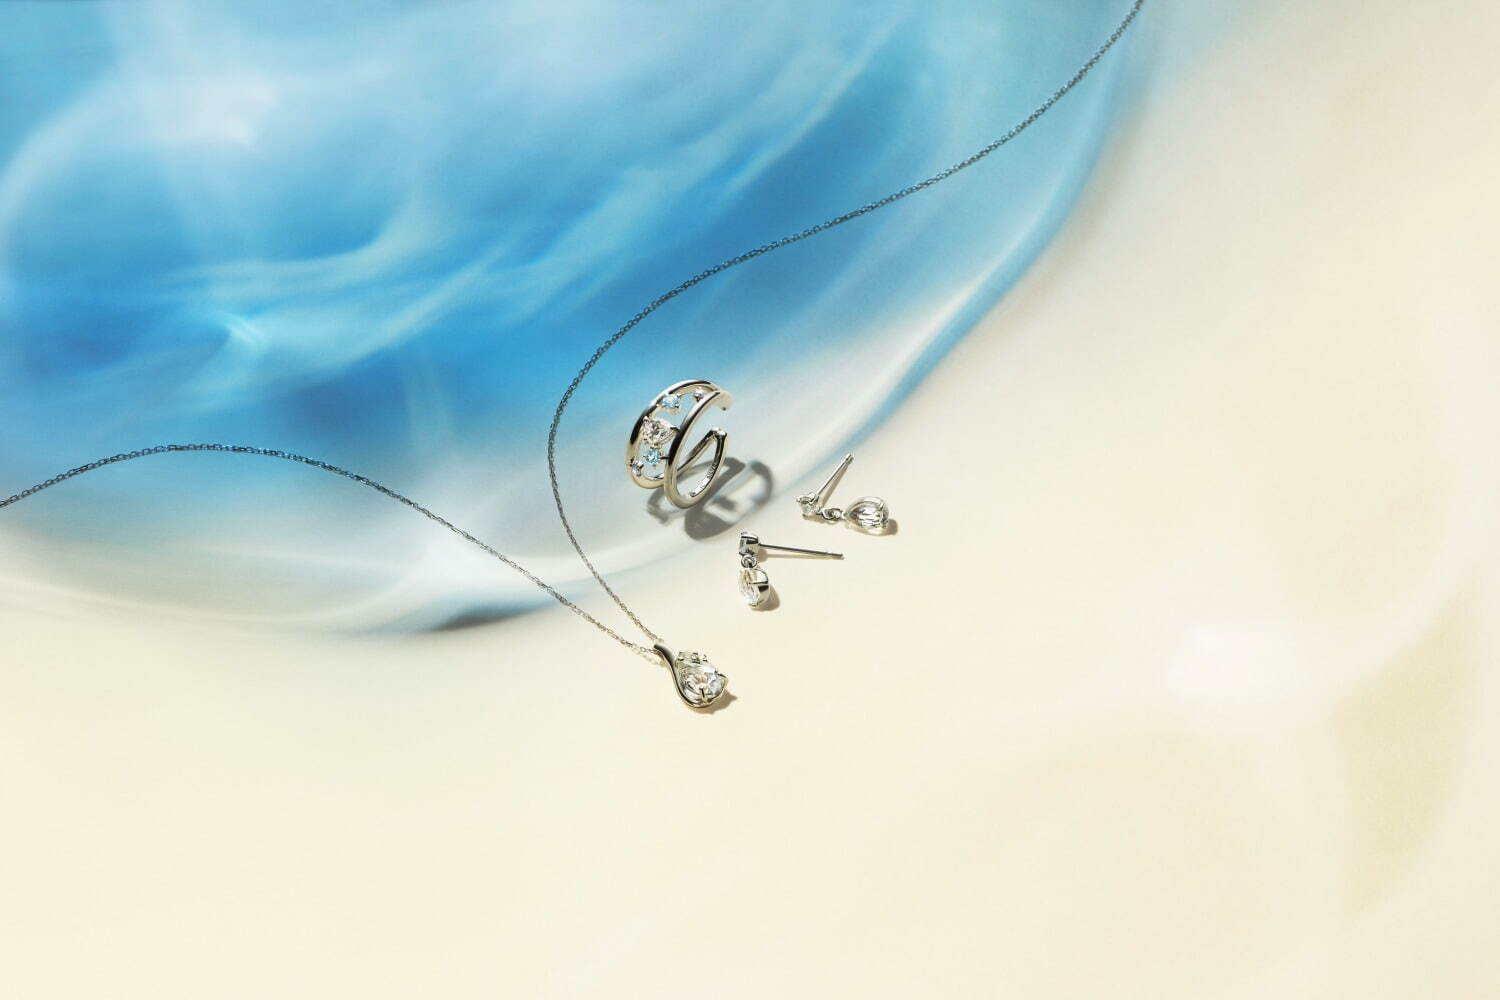 左から)K10WG Necklace / Topaz / Moonstone 26,400円
SV(Ptc) Pierced Earrings & Ear Cuff set / CZ /Topaz 22,000円